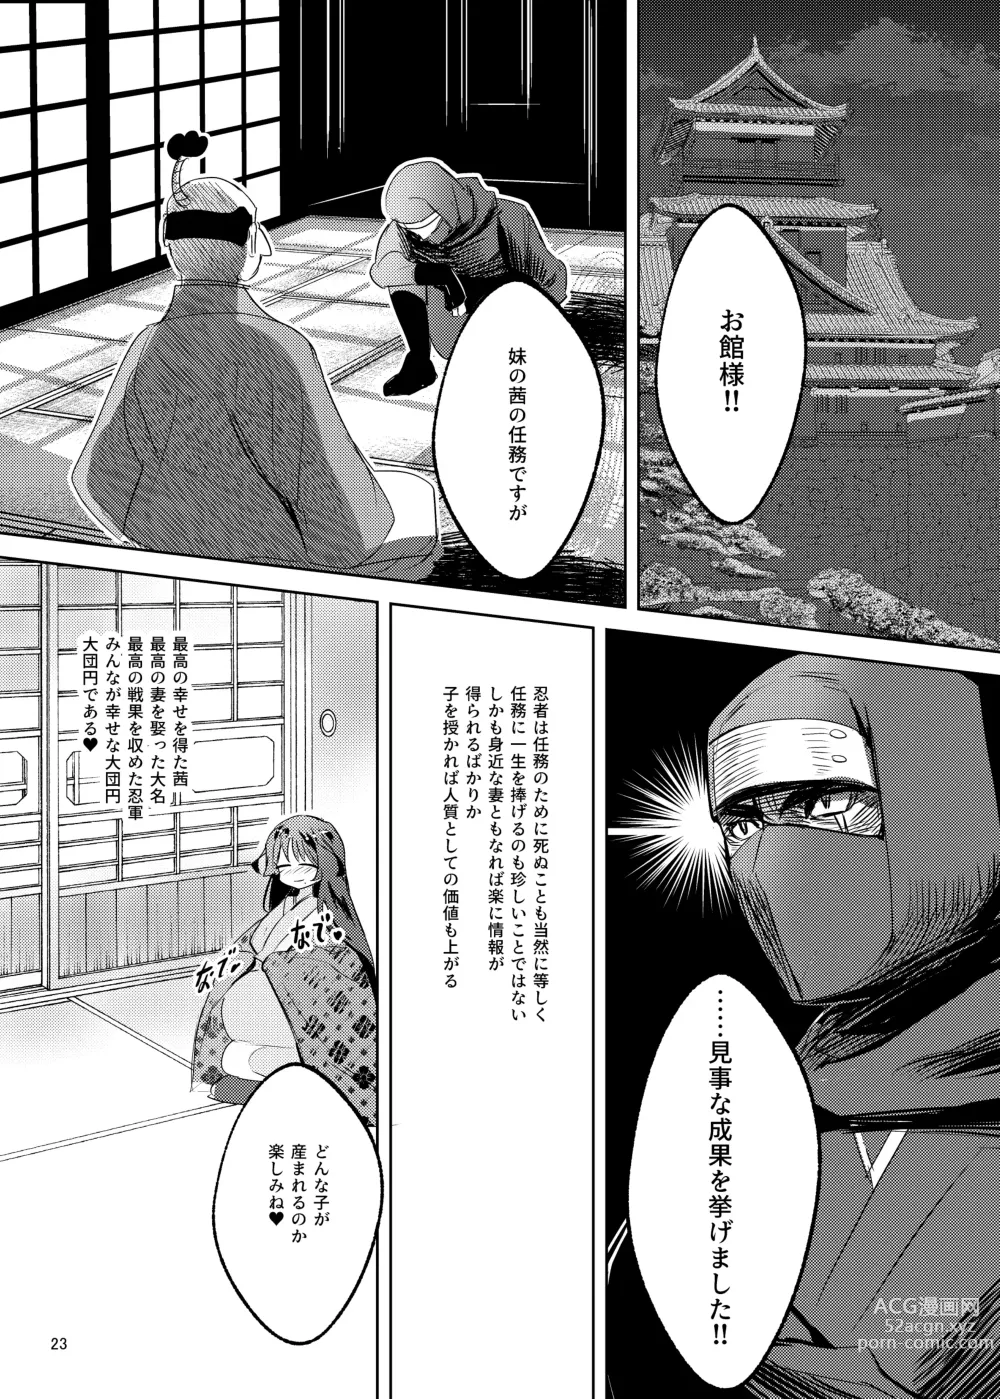 Page 24 of doujinshi Bakunyuu Kunoichi Akane no Innyuu Ninpouchou